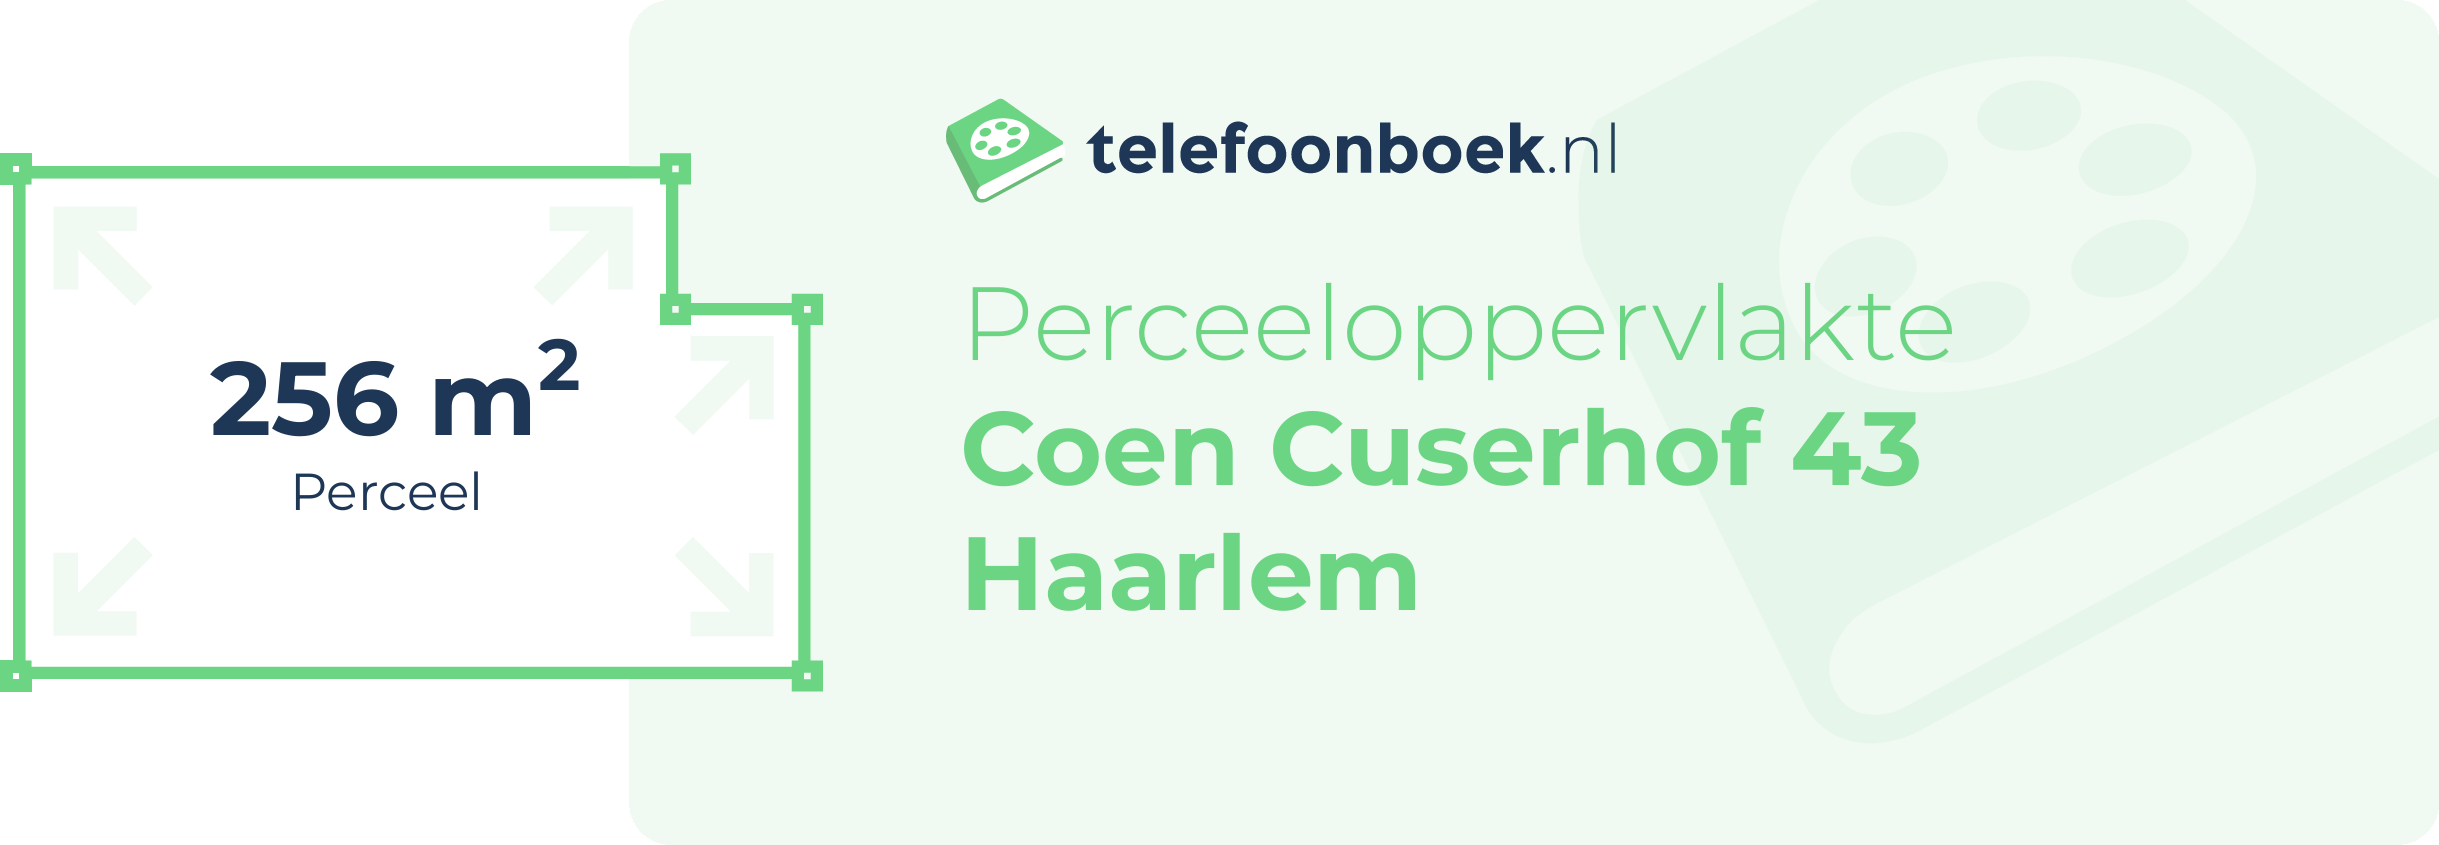 Perceeloppervlakte Coen Cuserhof 43 Haarlem